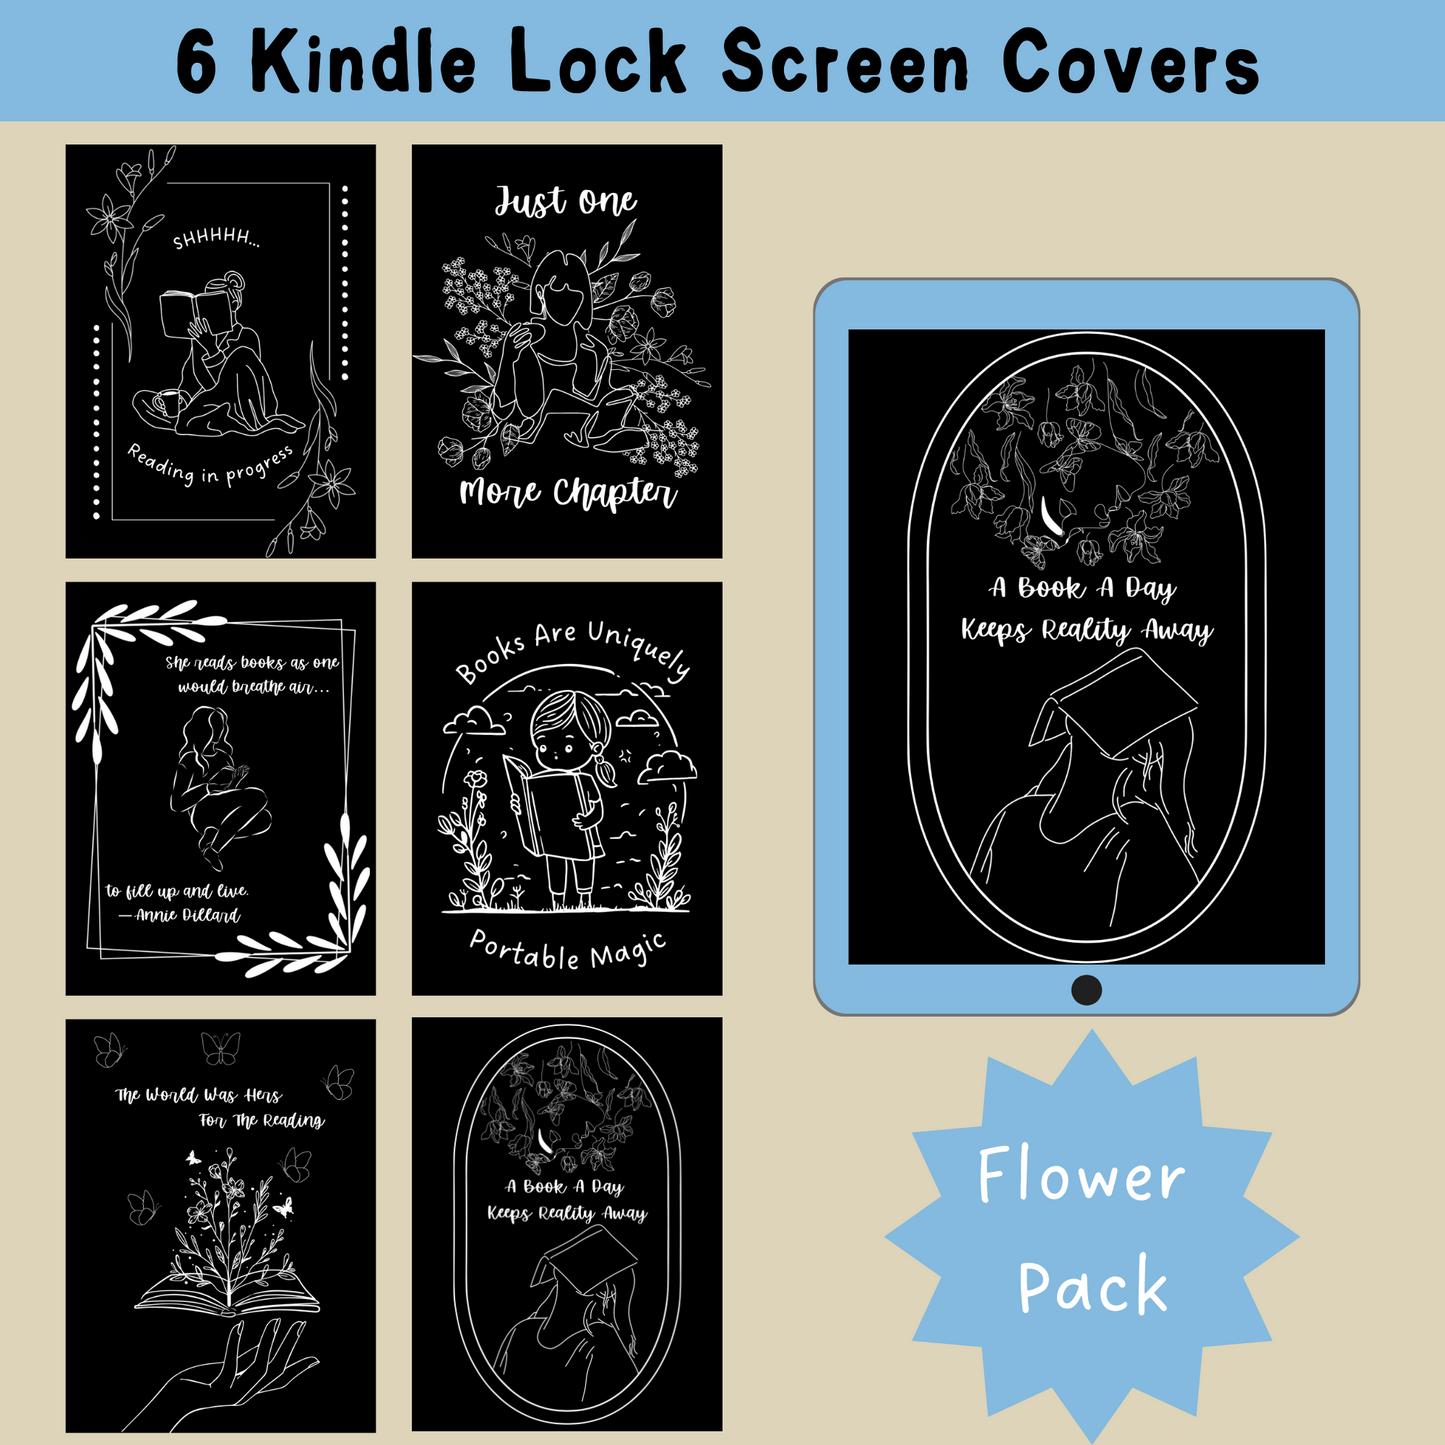 Kindle Lock Screen - Flower Pack